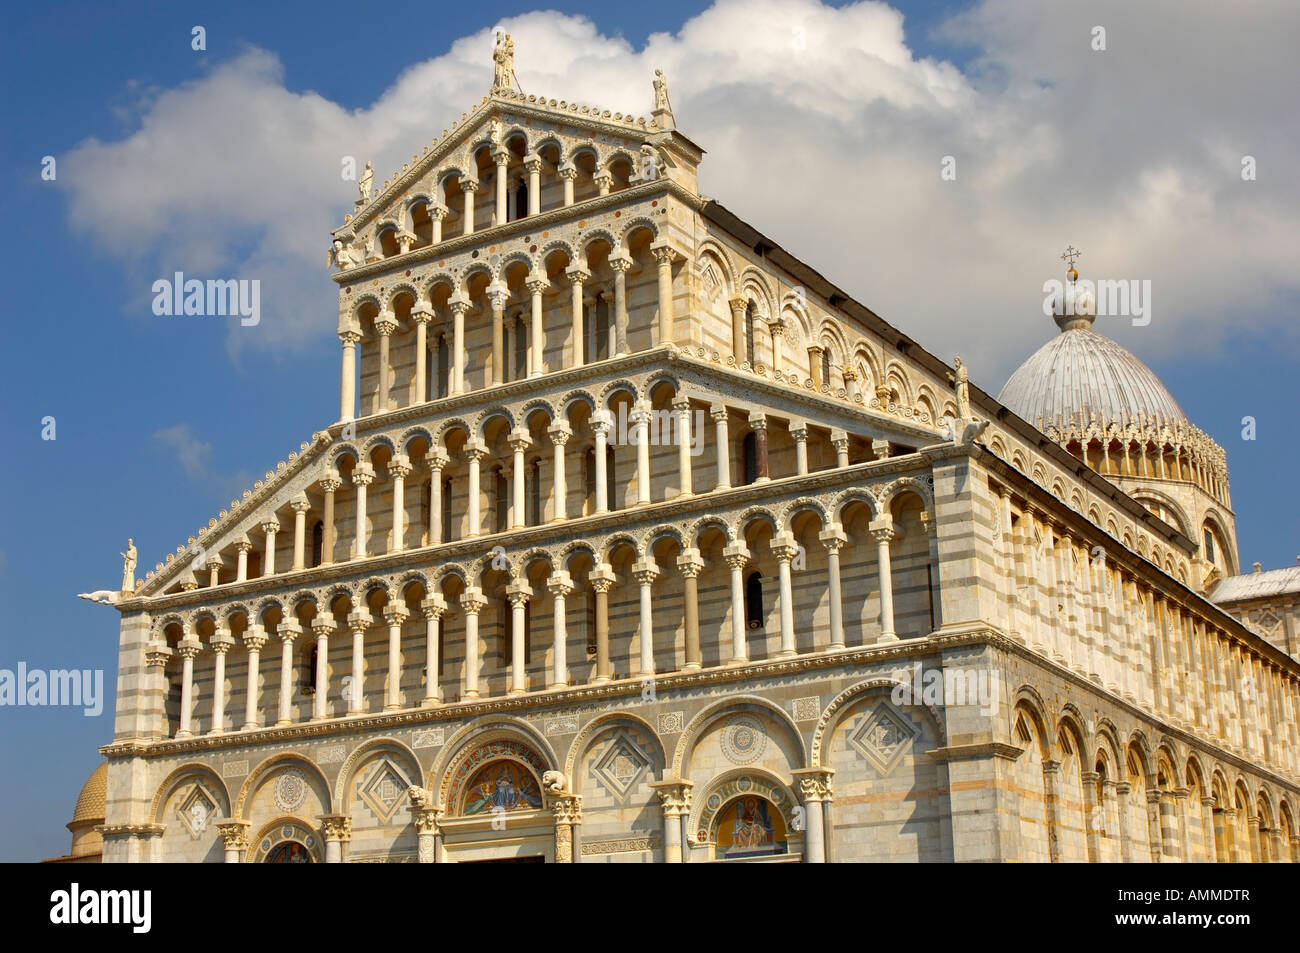 Blick auf den Dom von Pisa romanische Arkaden an der Fassade des Doms. Piazza del Miracoli Pisa Italien Stockfoto